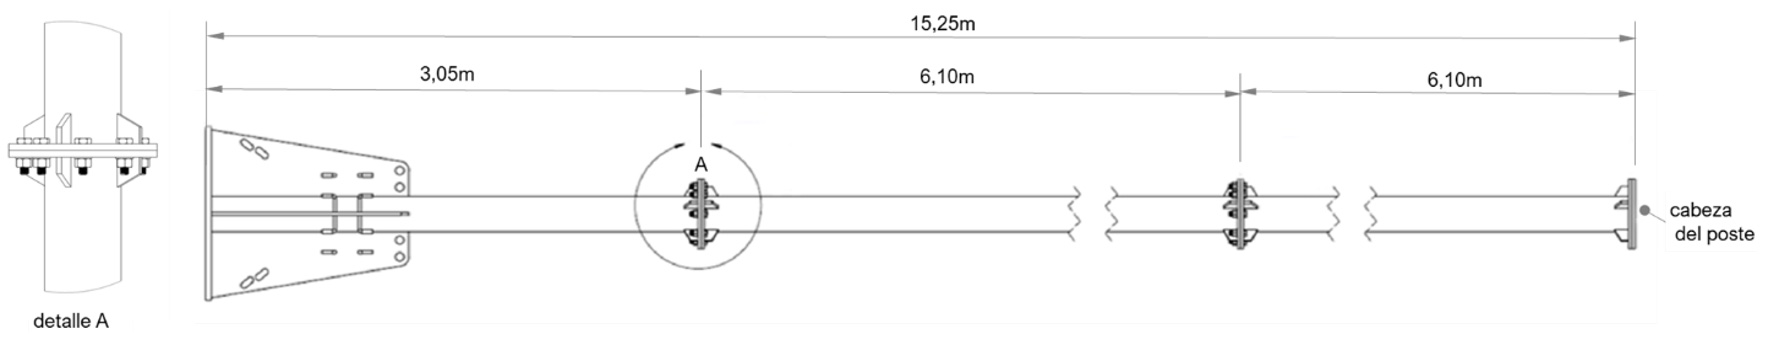 Figura 10.- Montaje del poste, detalle de las conexiones